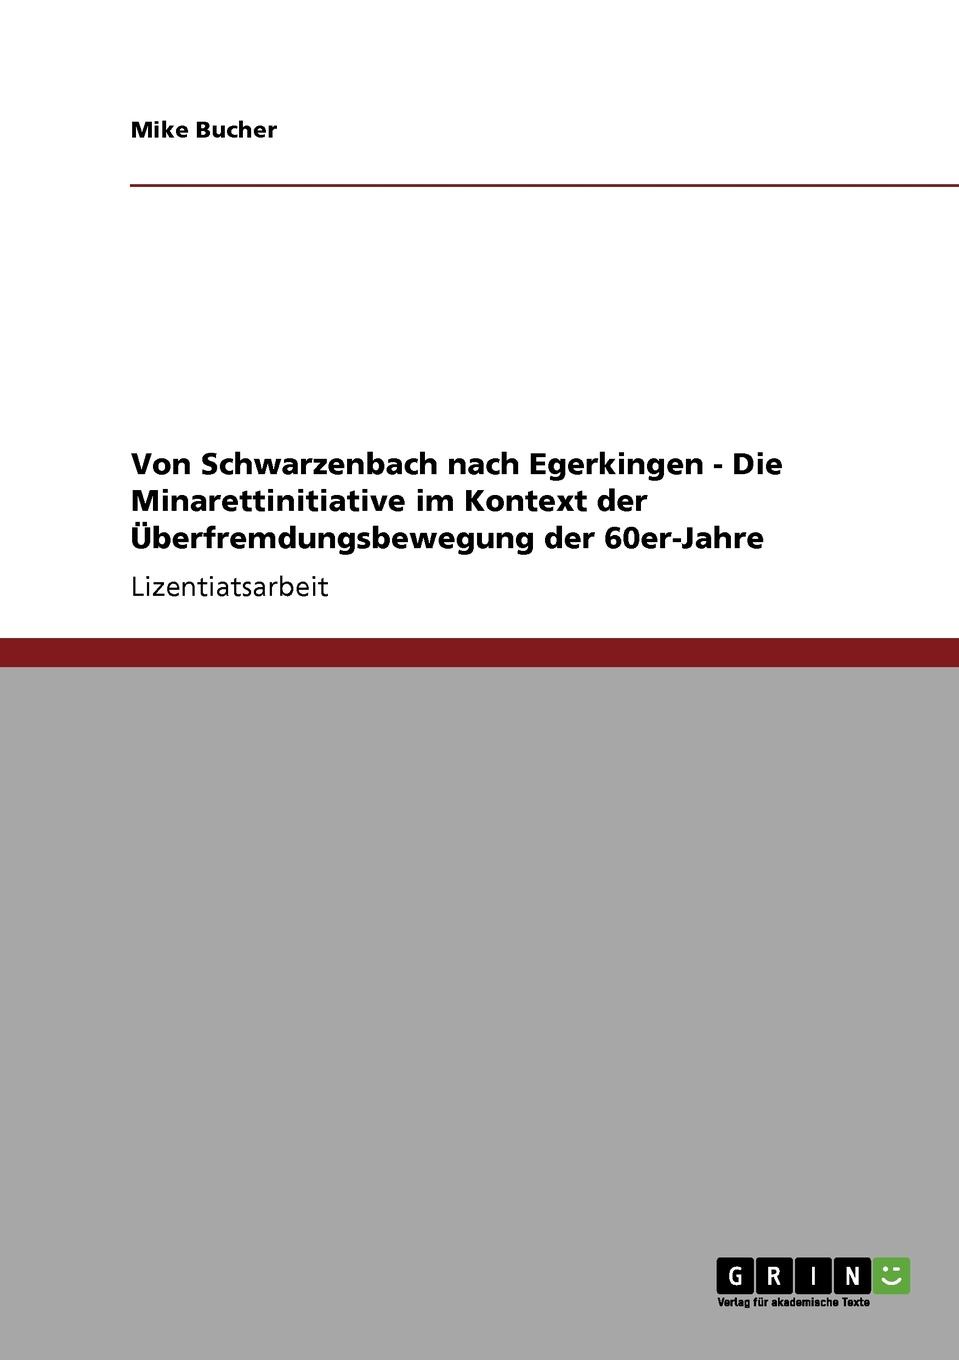 Von Schwarzenbach nach Egerkingen - Die Minarettinitiative im Kontext der Uberfremdungsbewegung der 60er-Jahre